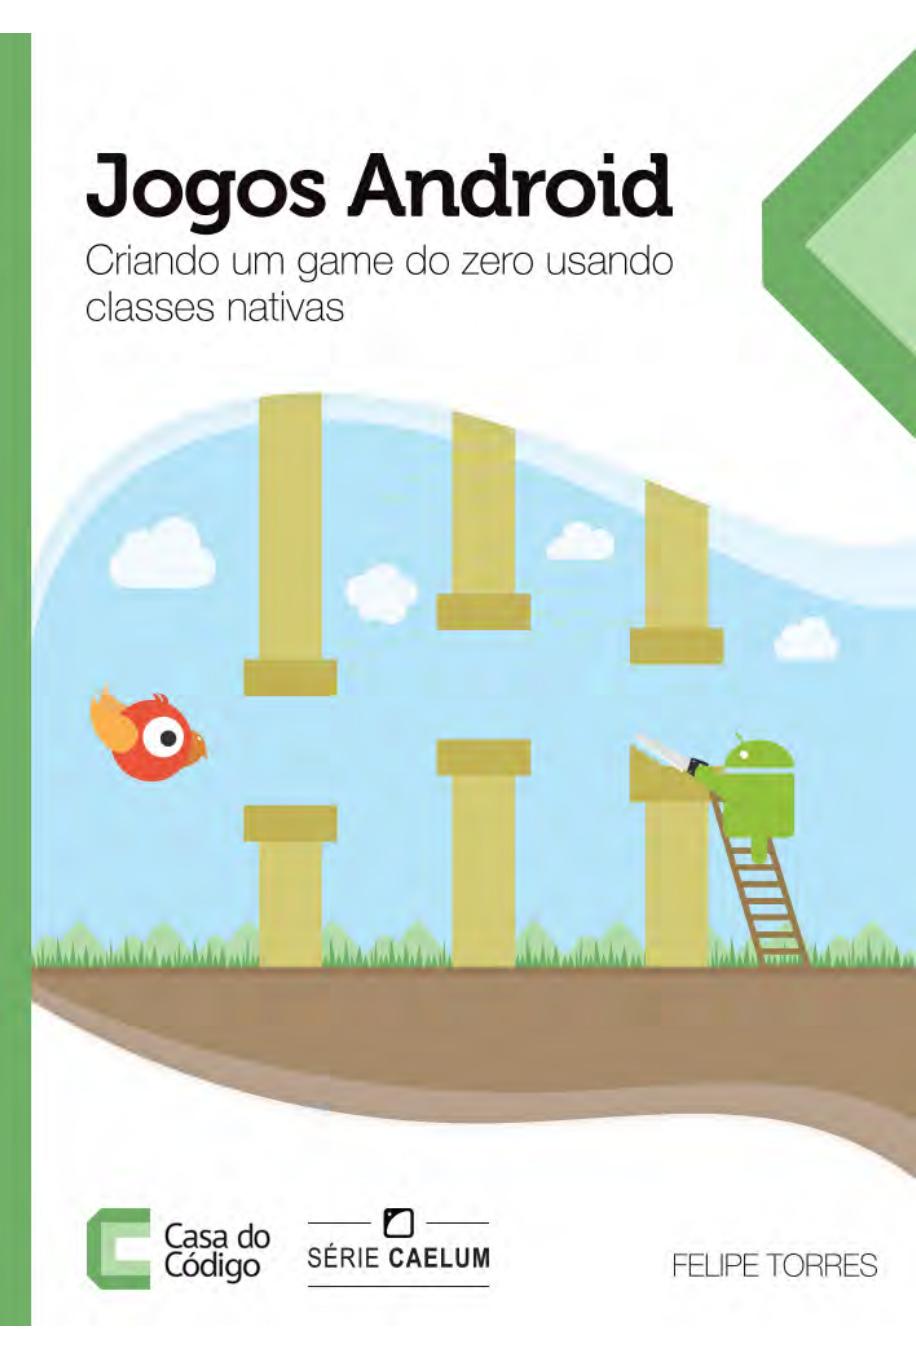 Jogos Android. Crie um game do zero usando classes nativas